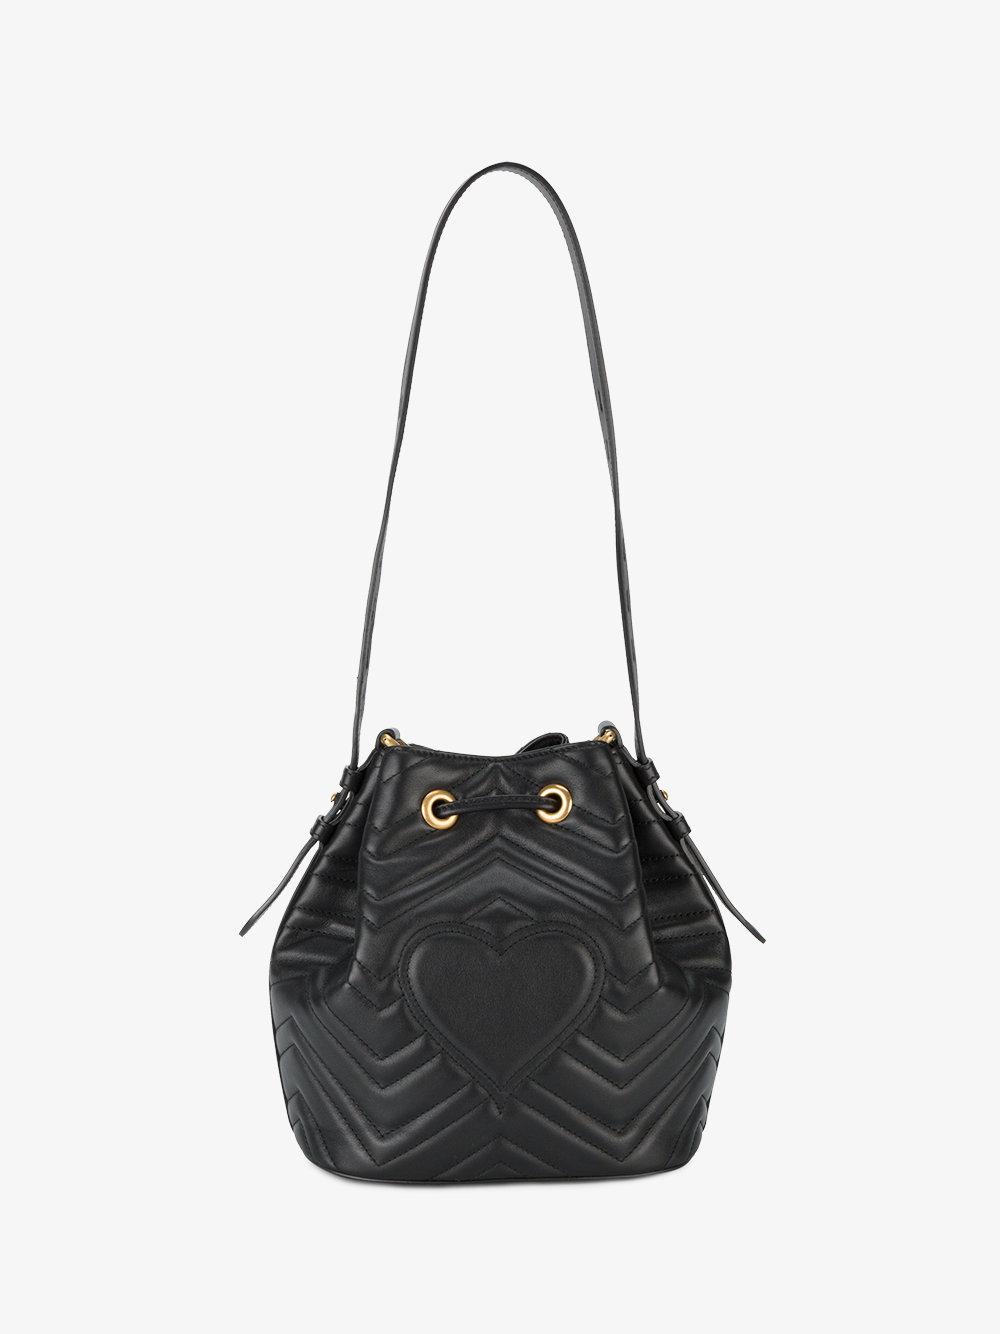 Gucci Marmont Mini Bucket Bag in Black - Lyst